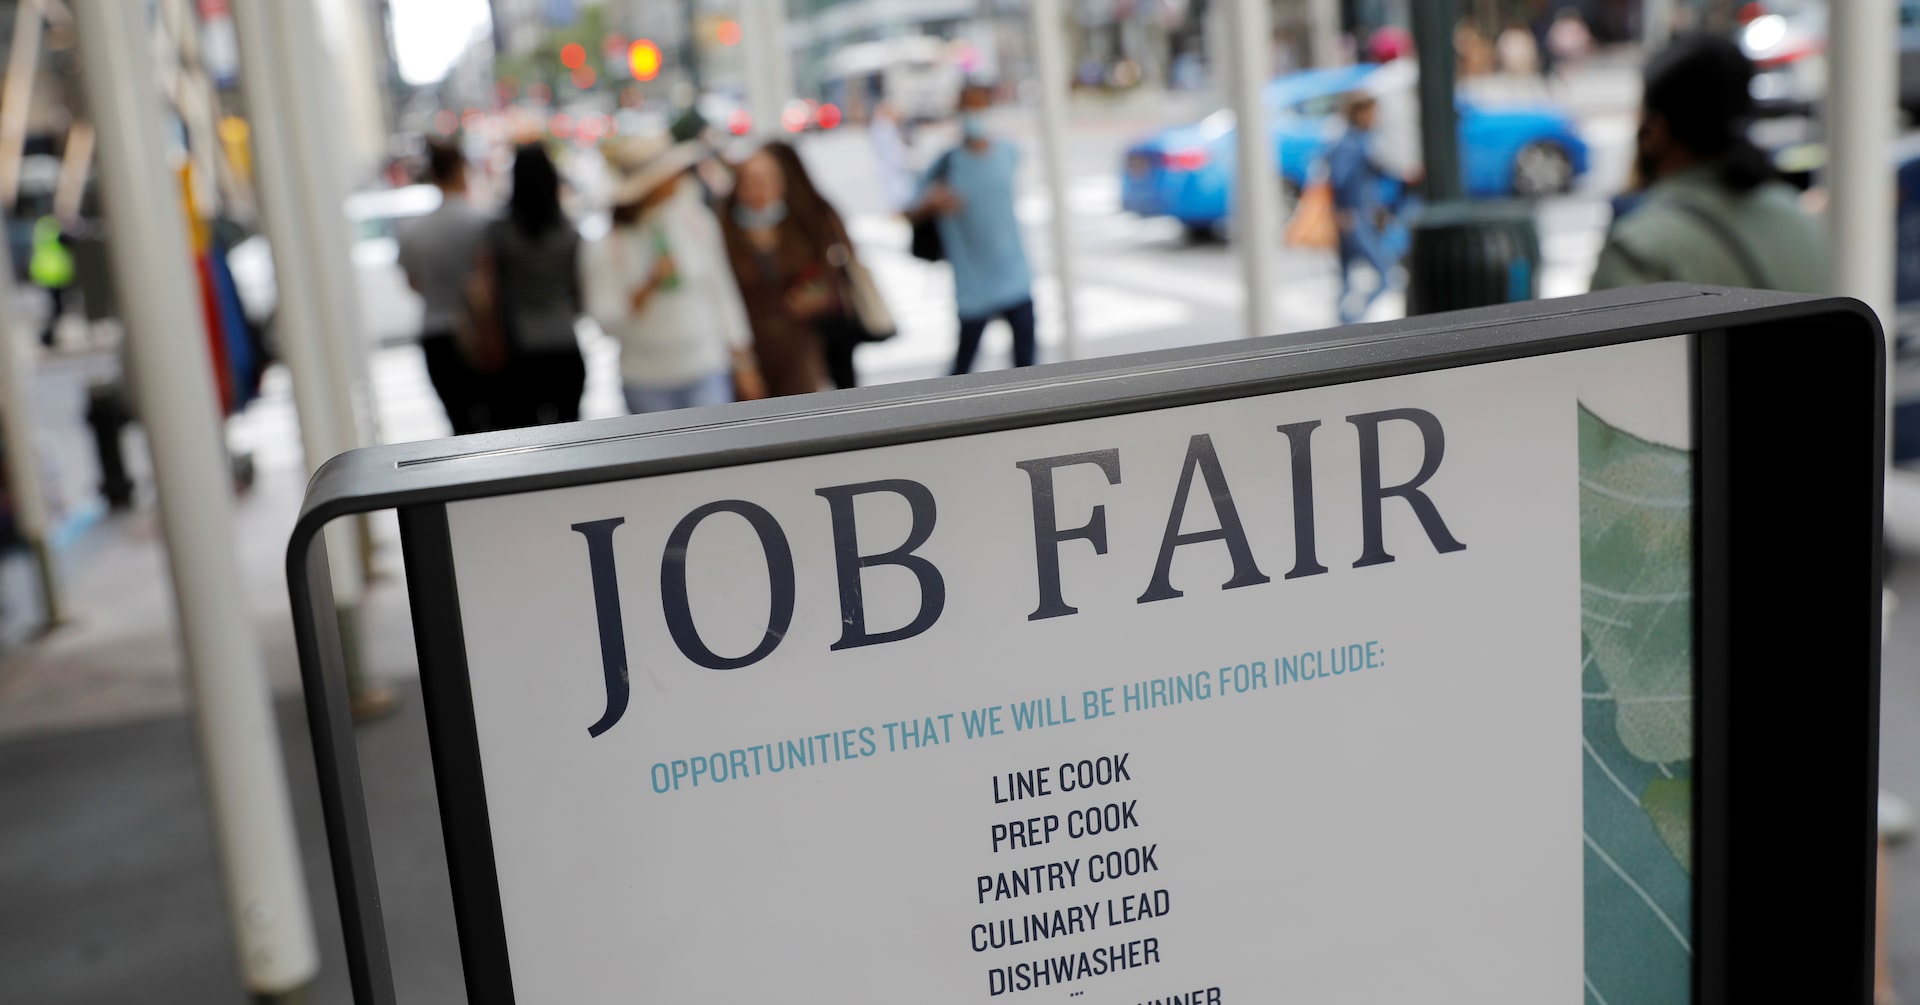 米新規失業保険申請23.8万件、減少に転じる